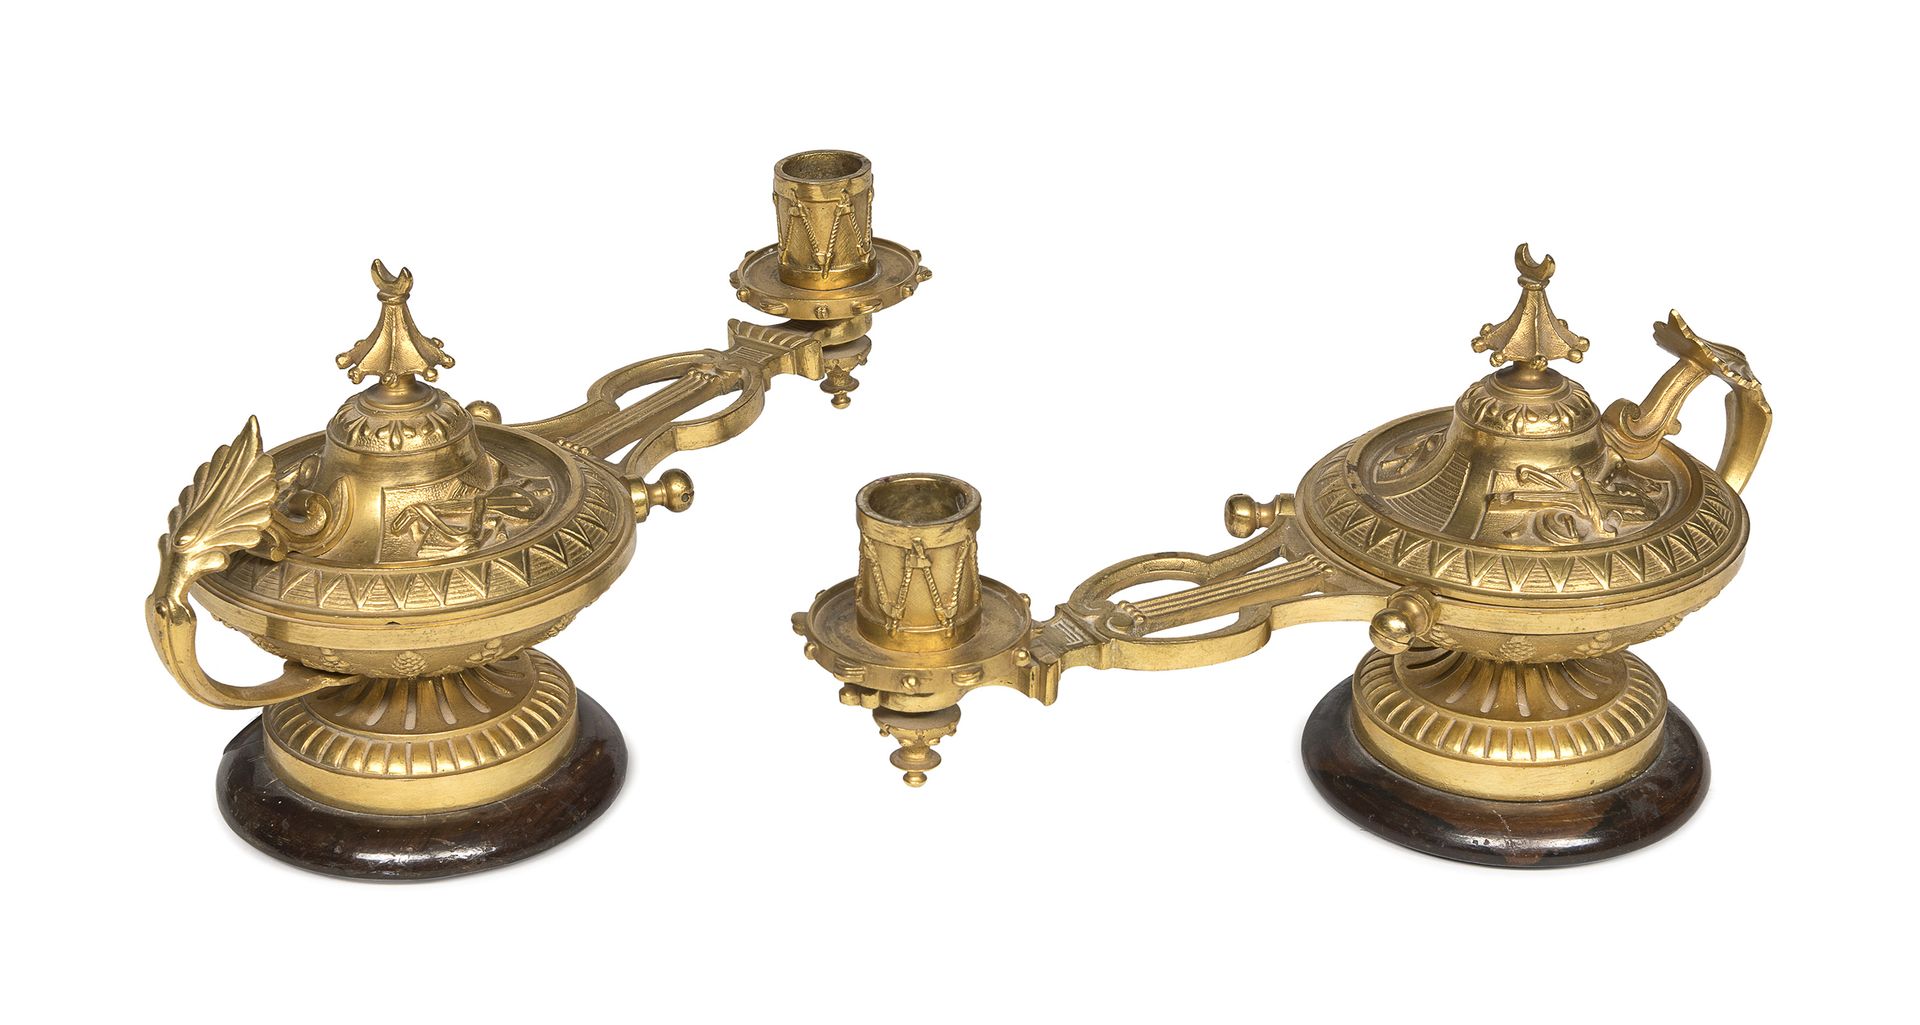 Null 一对鎏金铜油灯，20世纪

帝国路线，有琴形的烛台和凿出的凯旋和肋骨。大理石底座。

尺寸为17.5 x 13.5 x 29厘米。